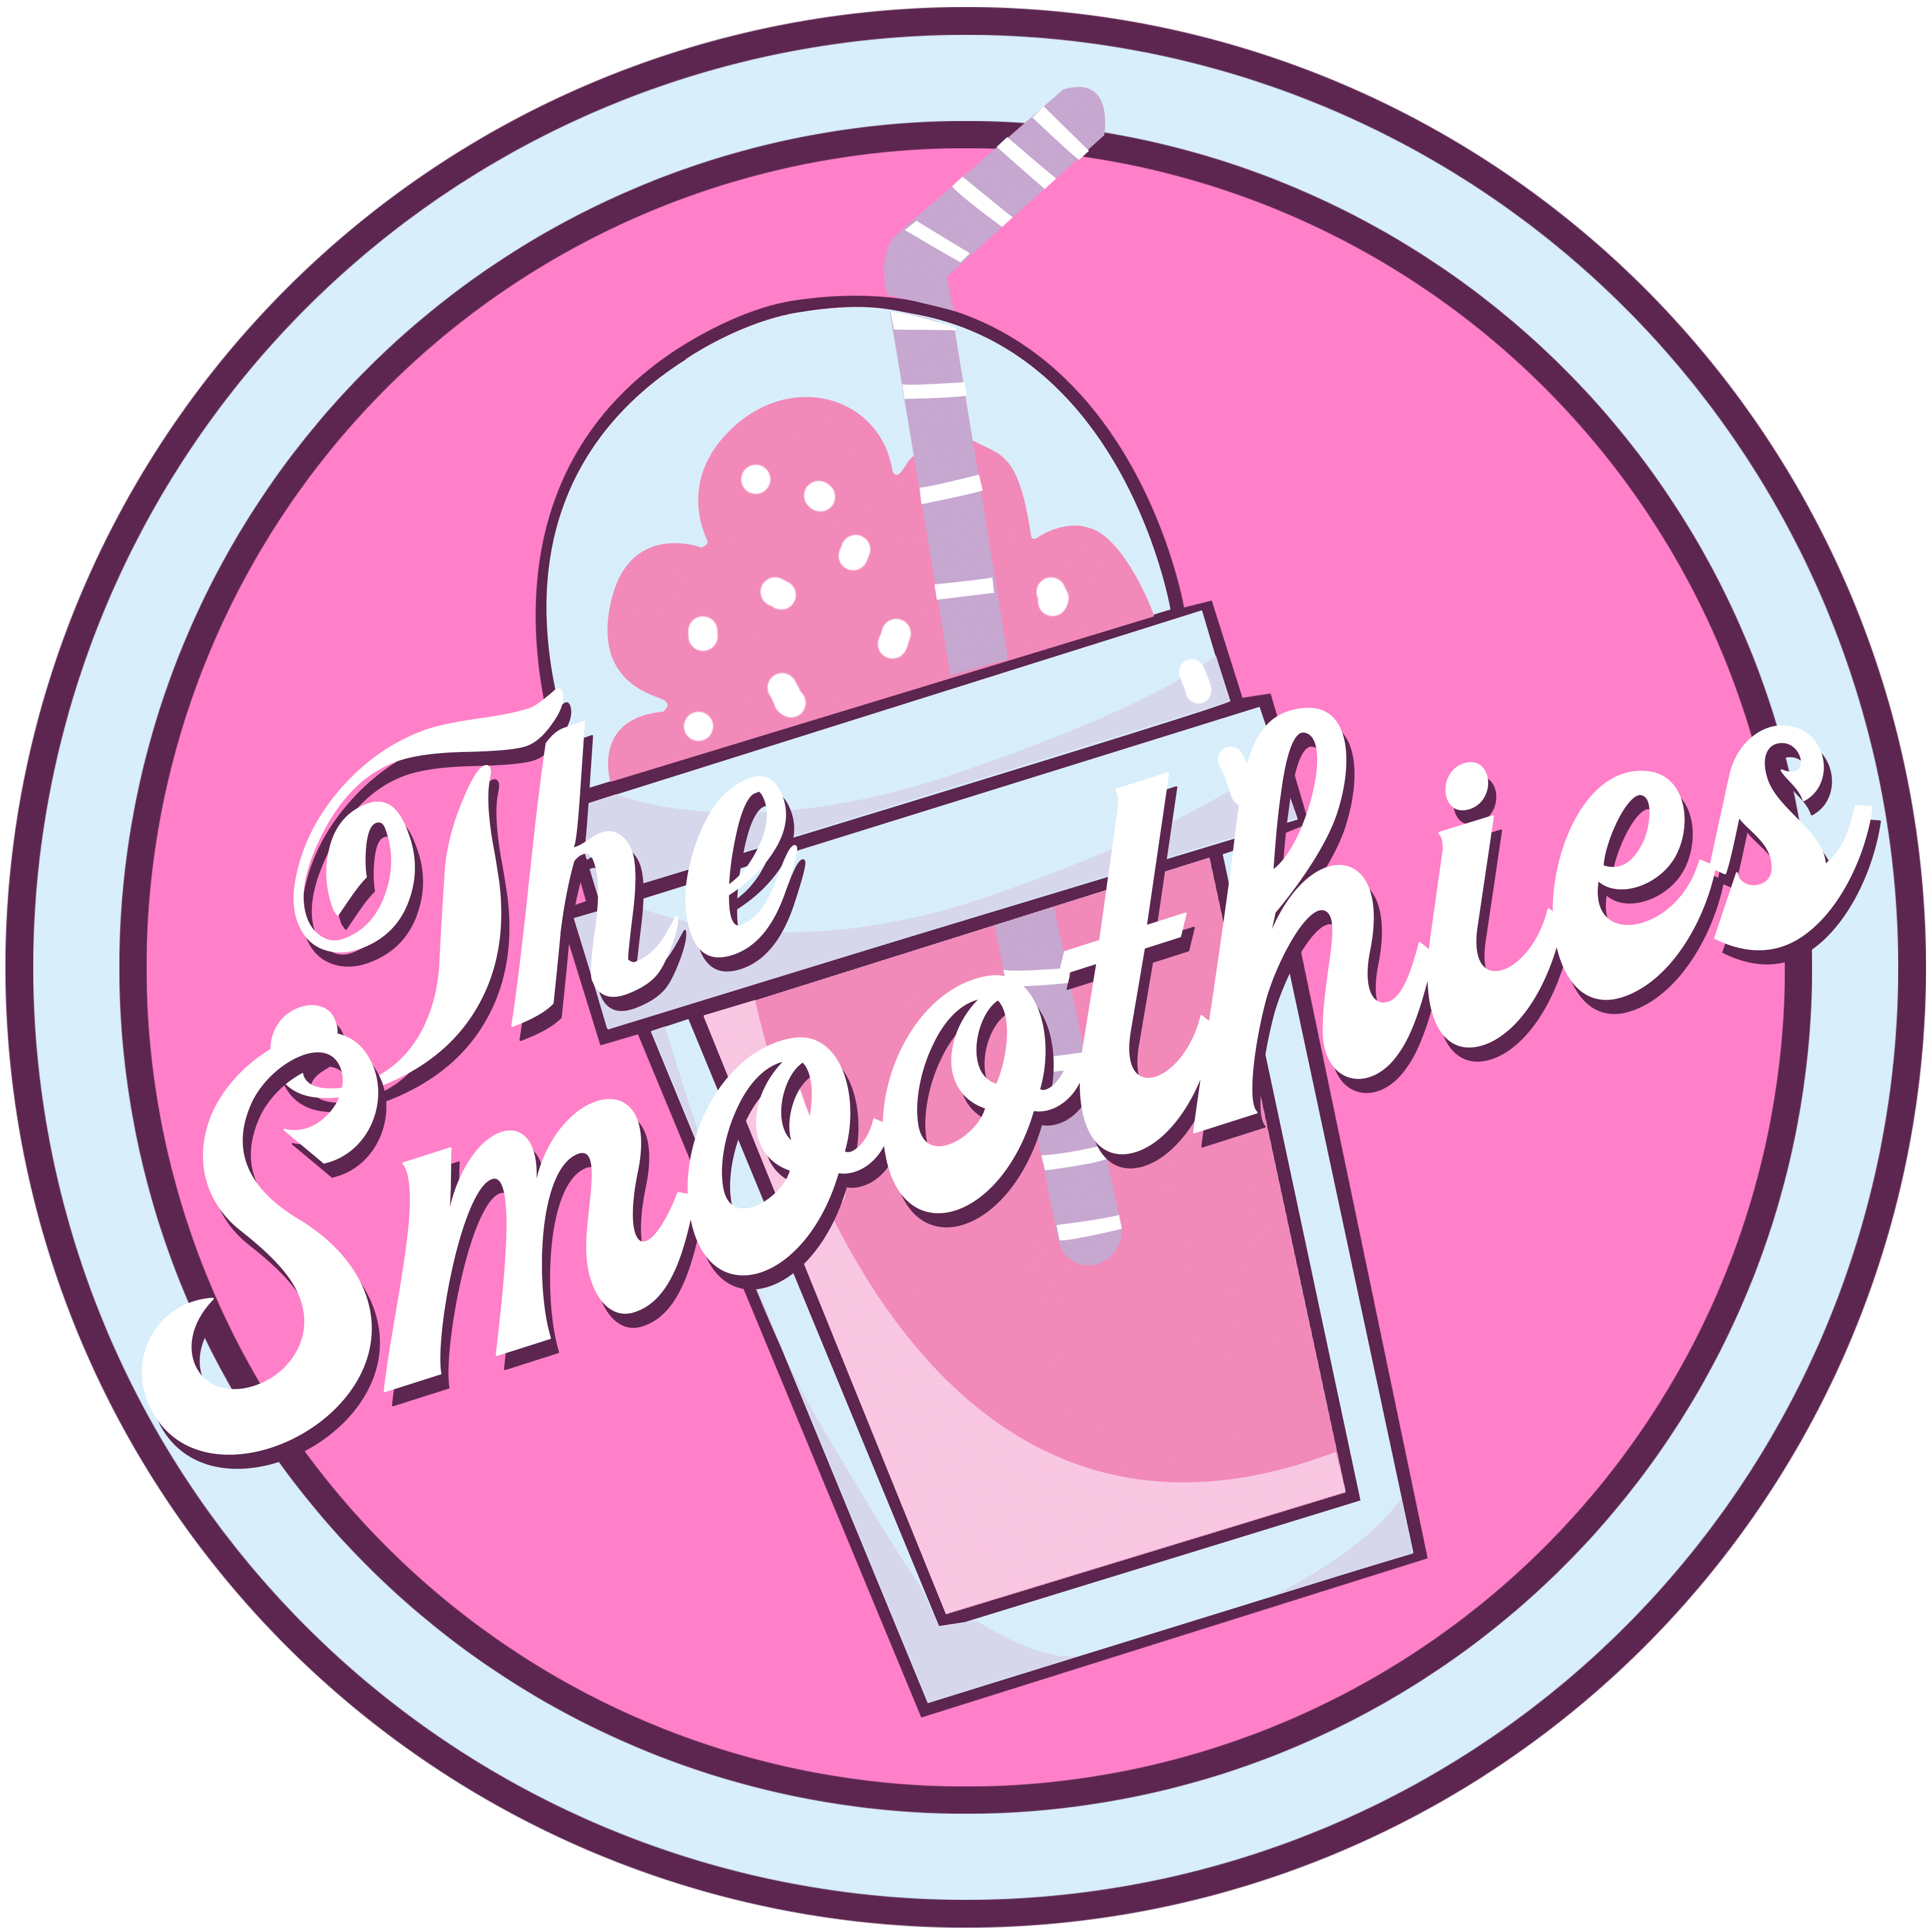 the smoothies logo